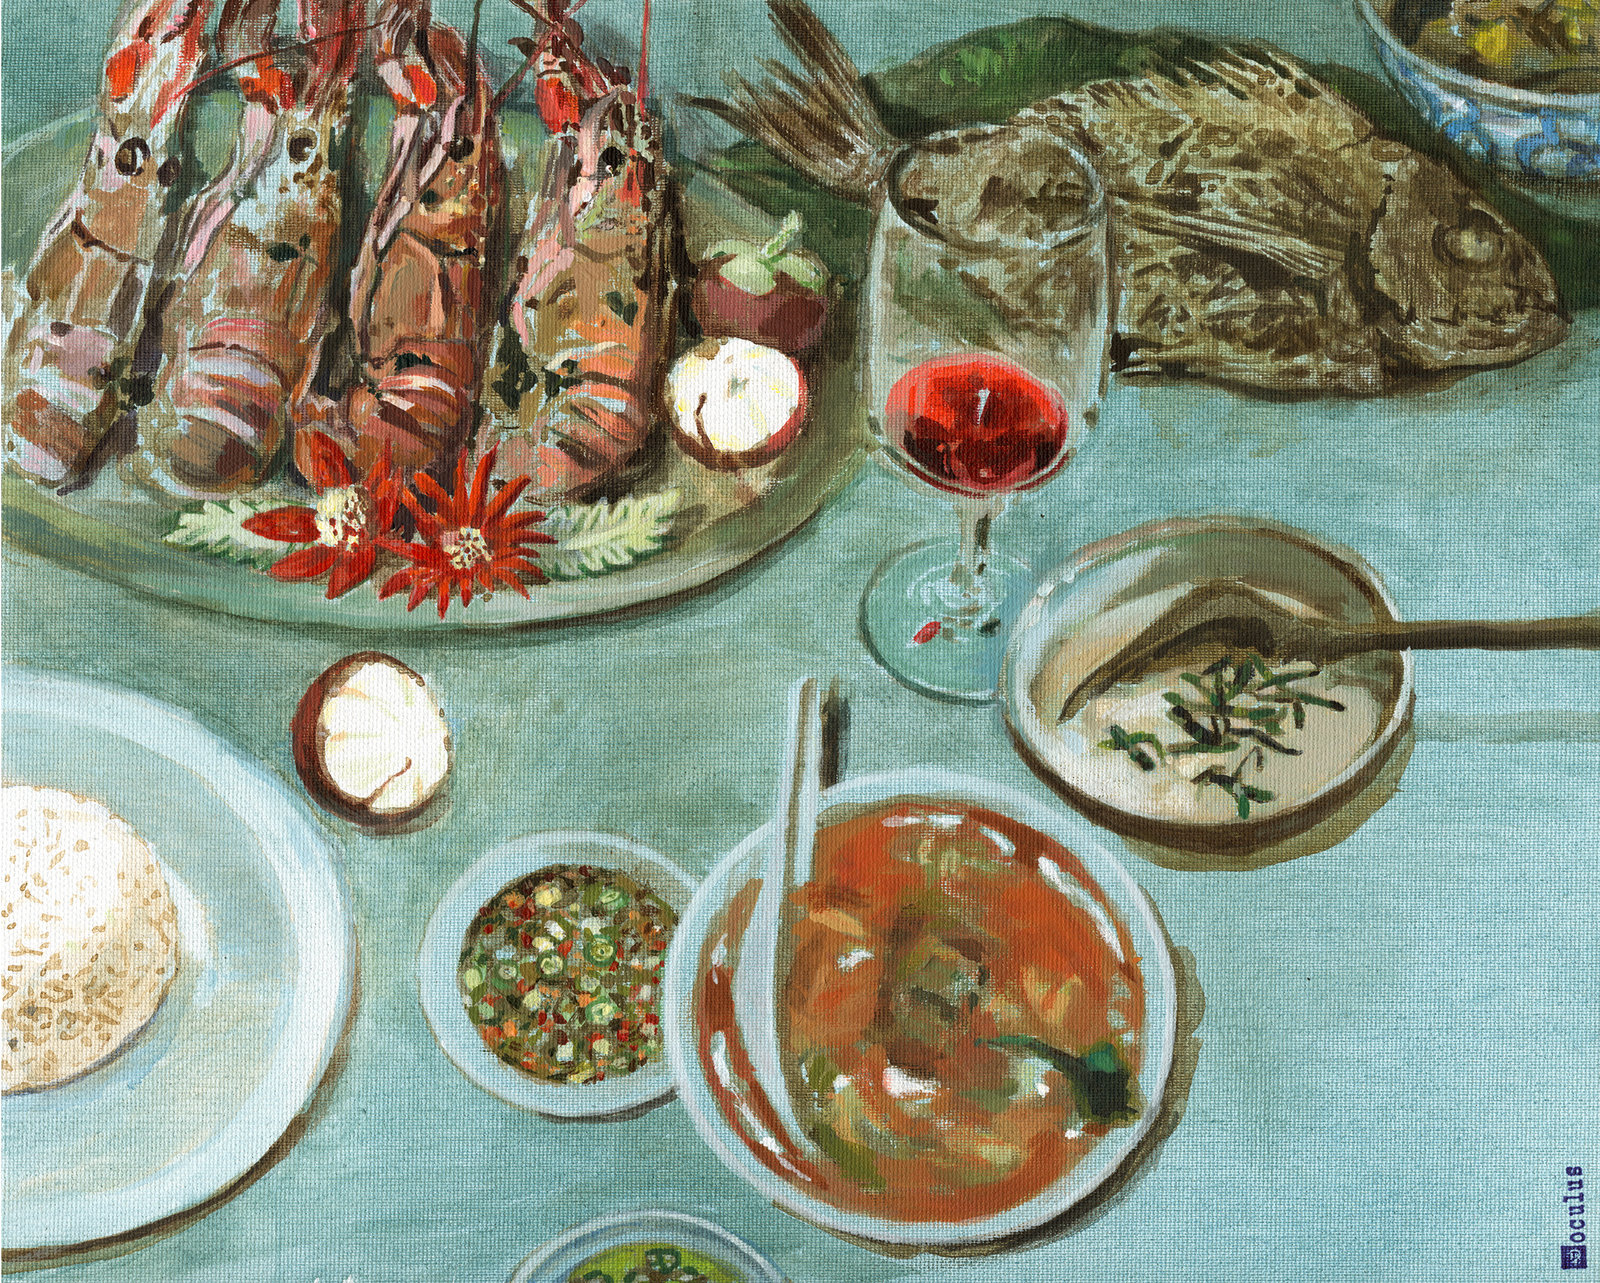 oculus-illustration-du-food-stilleben-thaifoood-wein